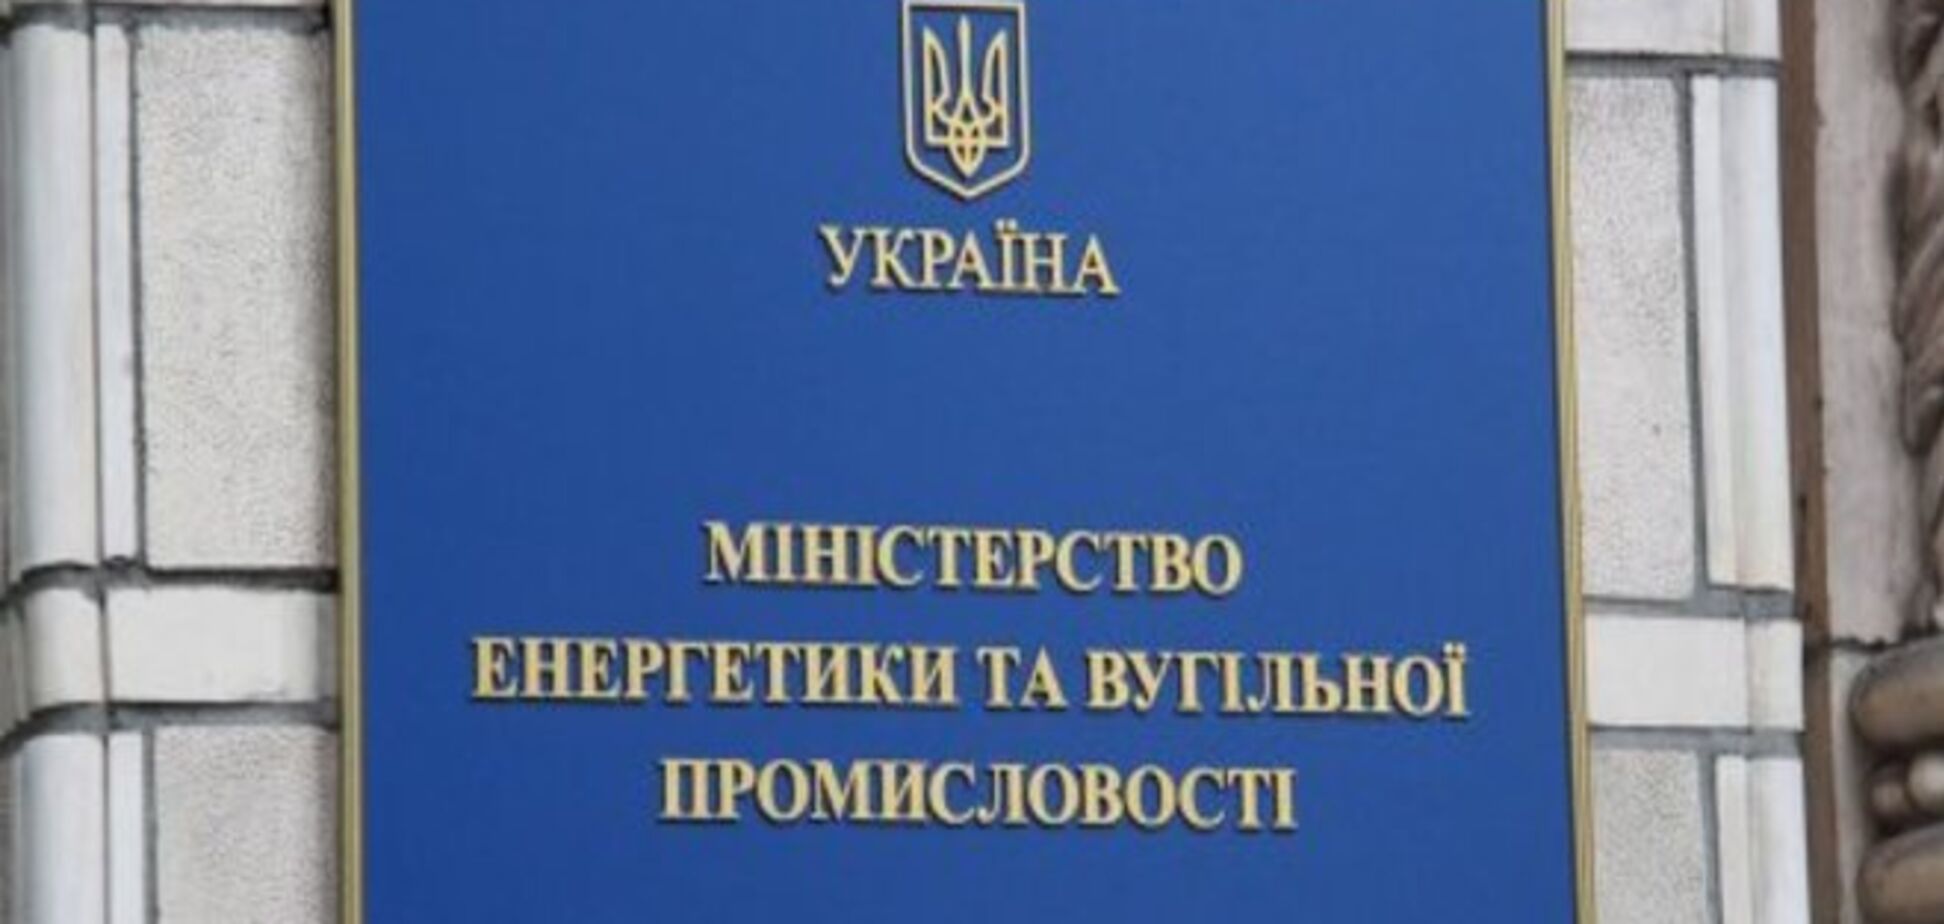 Диденко под силу решить проблему задолженности перед Газпромом - эксперт